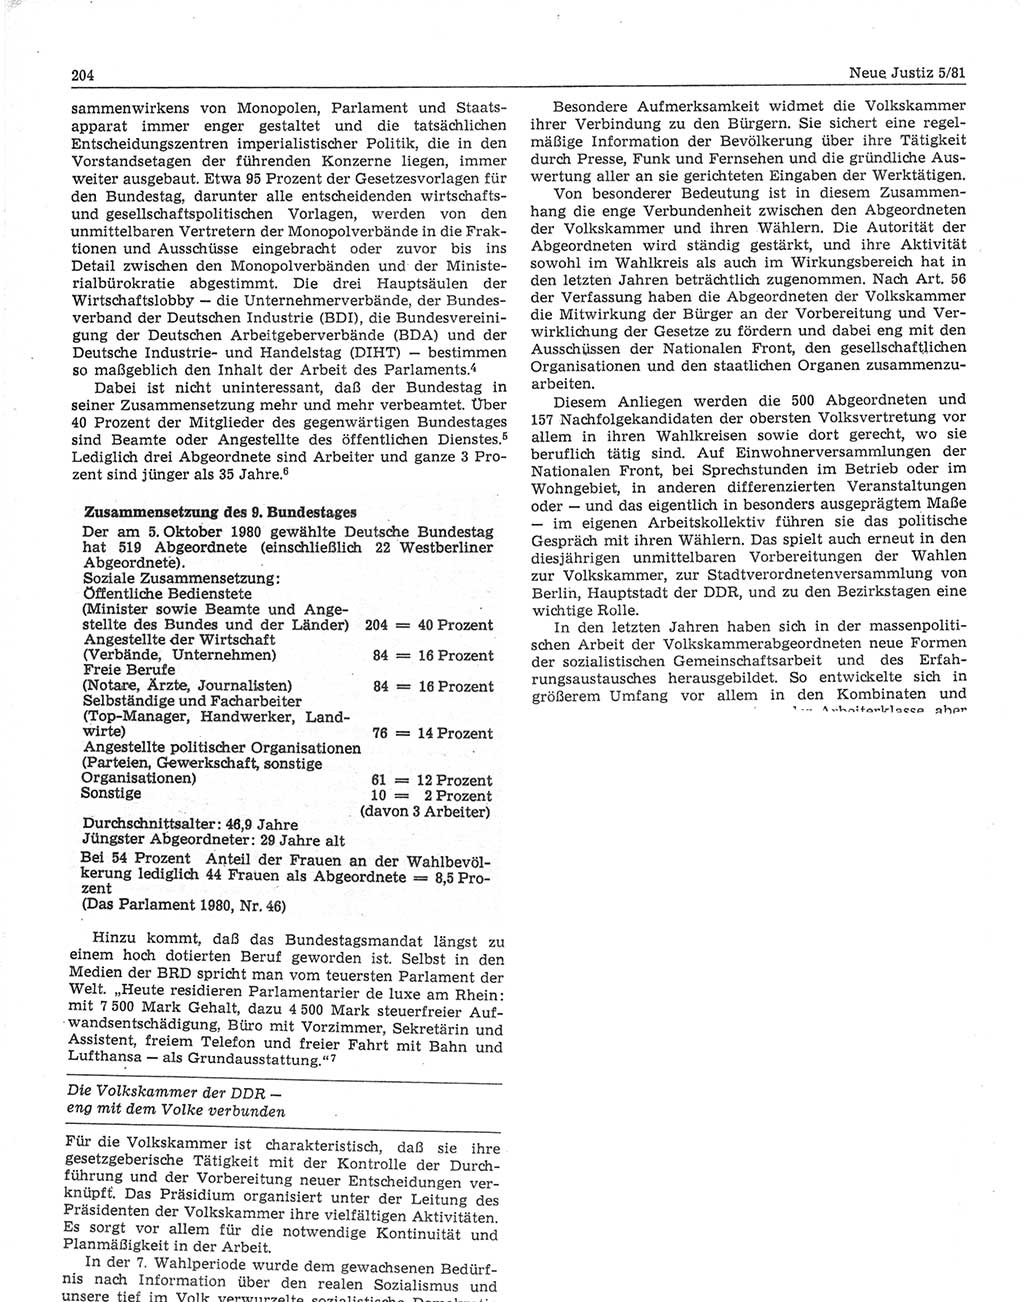 Neue Justiz (NJ), Zeitschrift für sozialistisches Recht und Gesetzlichkeit [Deutsche Demokratische Republik (DDR)], 35. Jahrgang 1981, Seite 204 (NJ DDR 1981, S. 204)